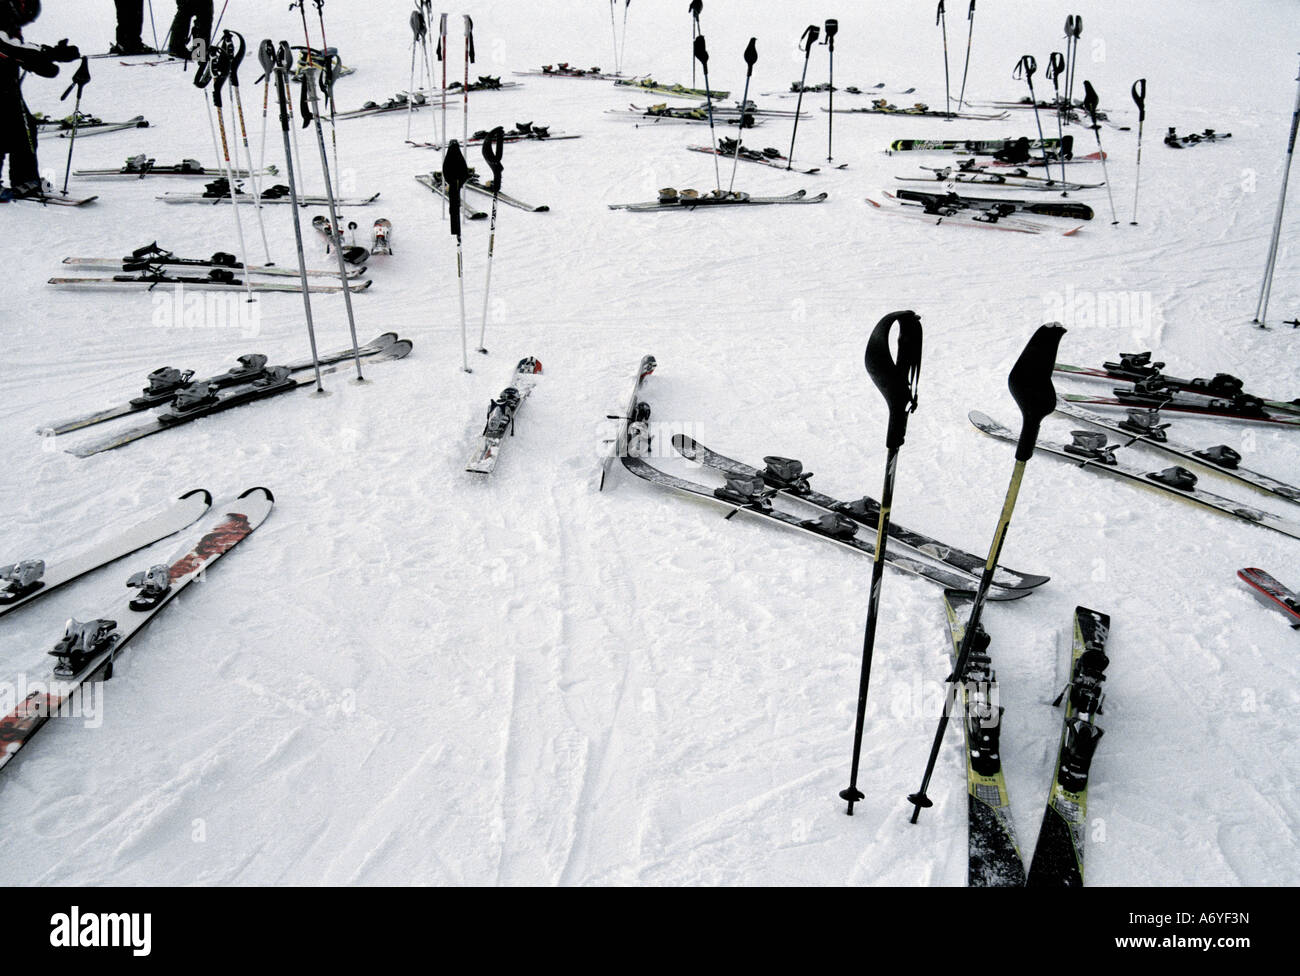 Ski equipment on the slopes at a ski resort Stock Photo